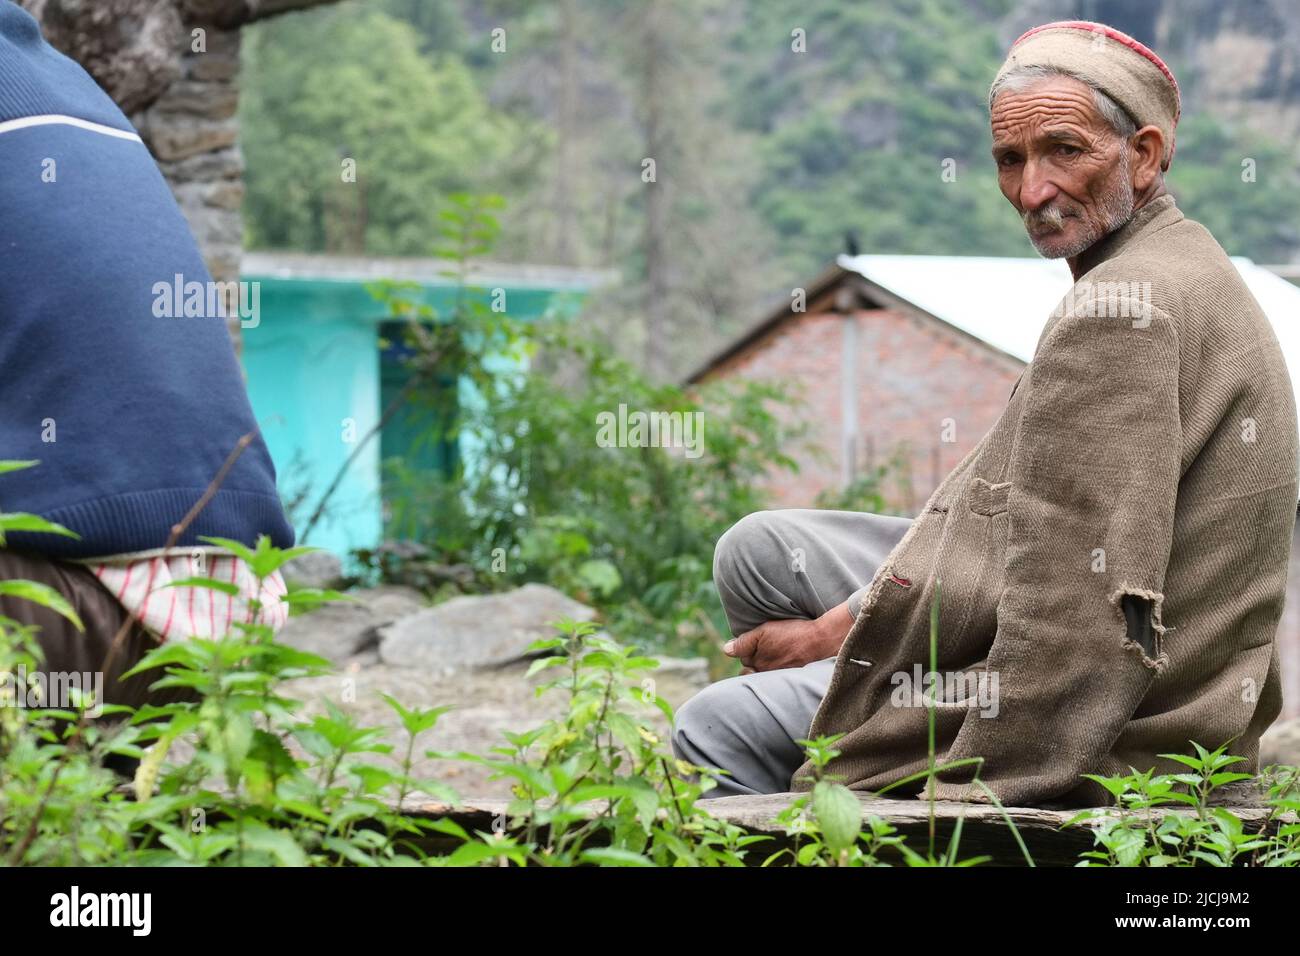 Vilalge Malana, Himachal Pradesh Stock Photo